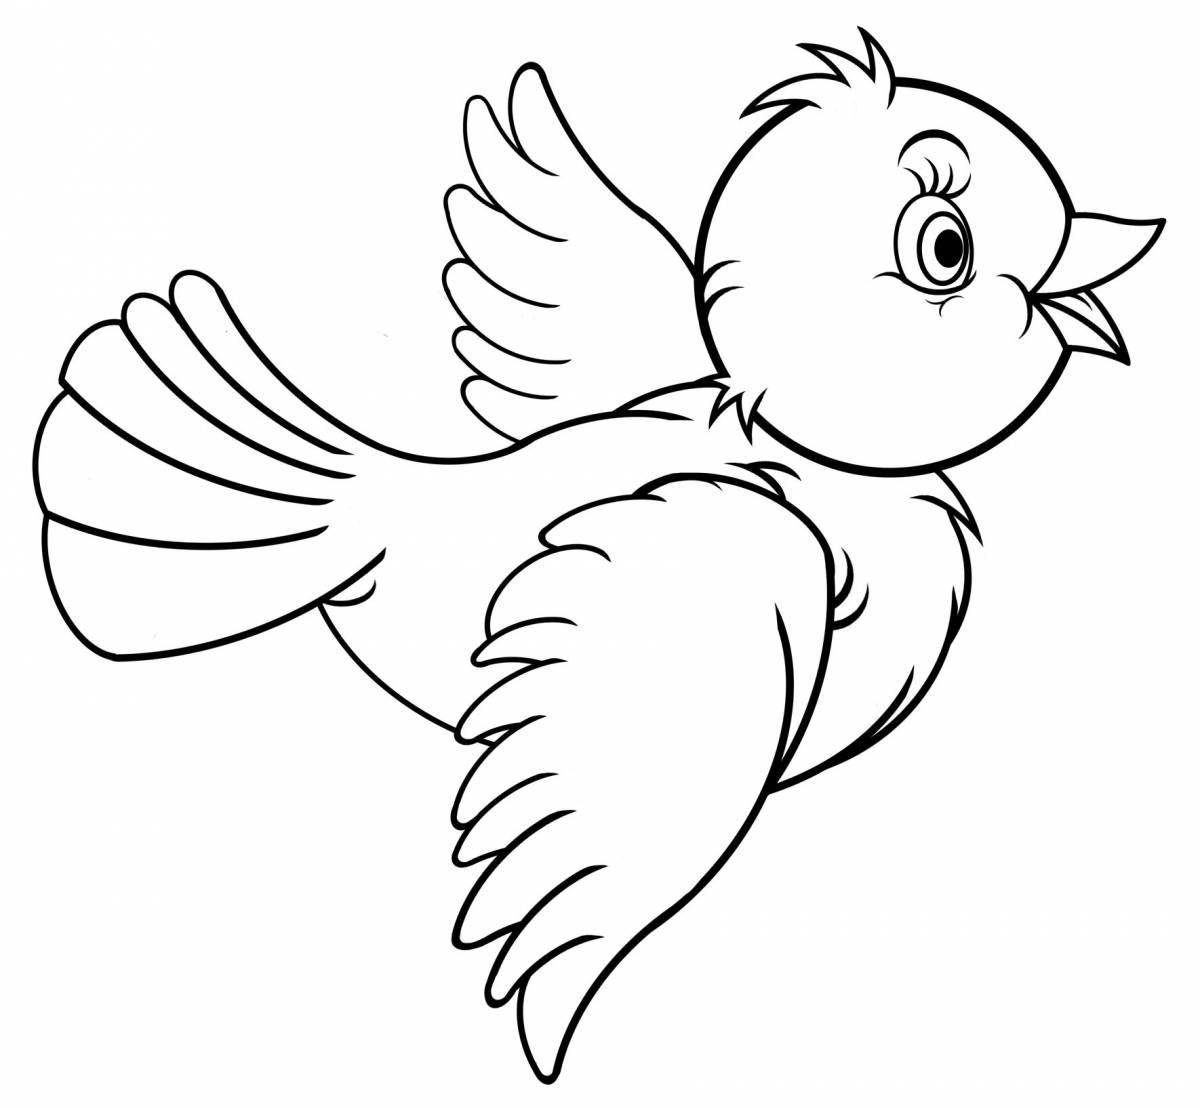 Увлекательная раскраска птиц для детей 2-3 лет